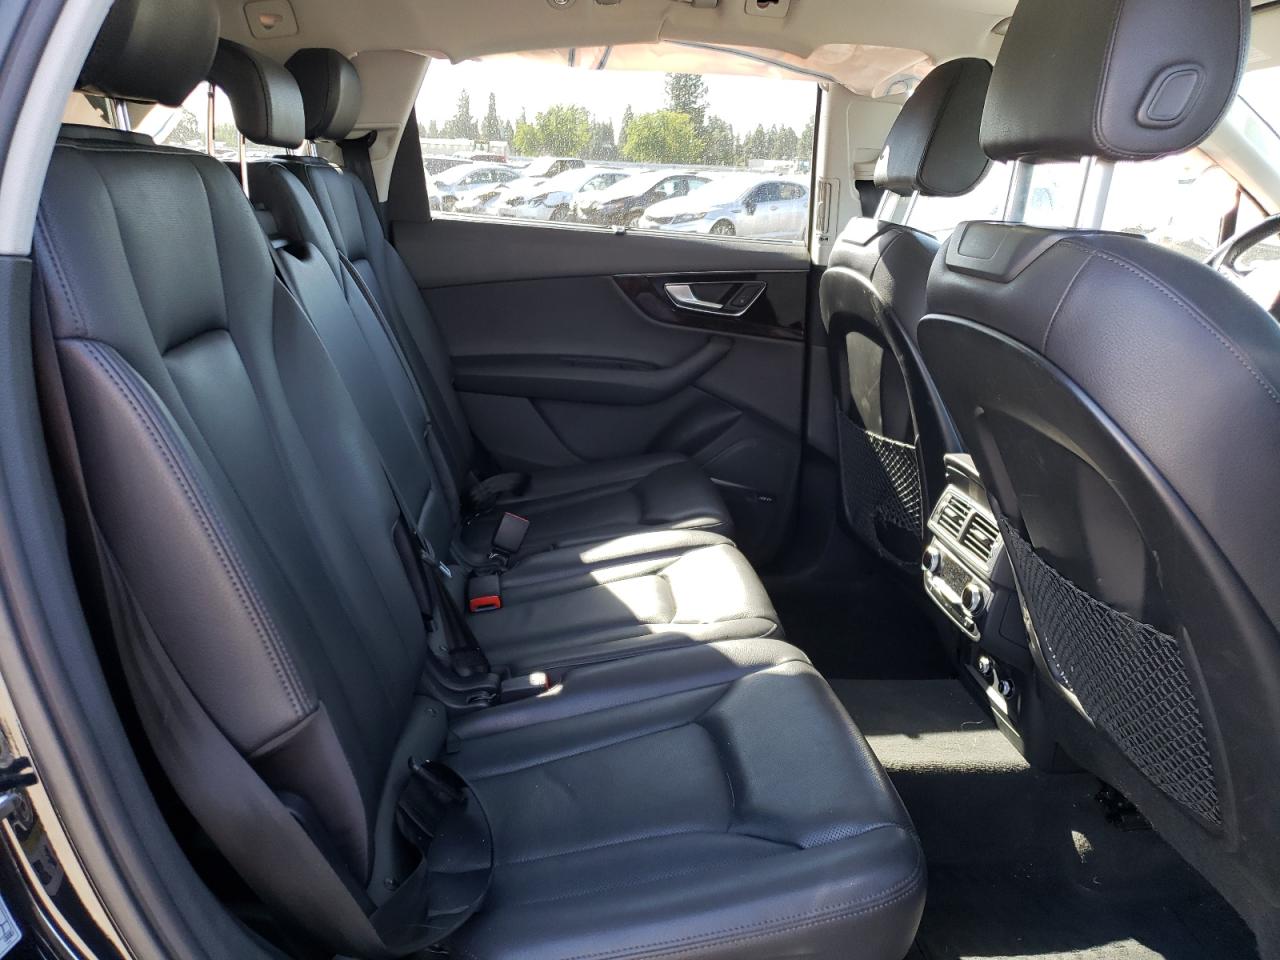 2018 Audi Q7 Prestige VIN: WA1VAAF70JD009556 Lot: 64048434